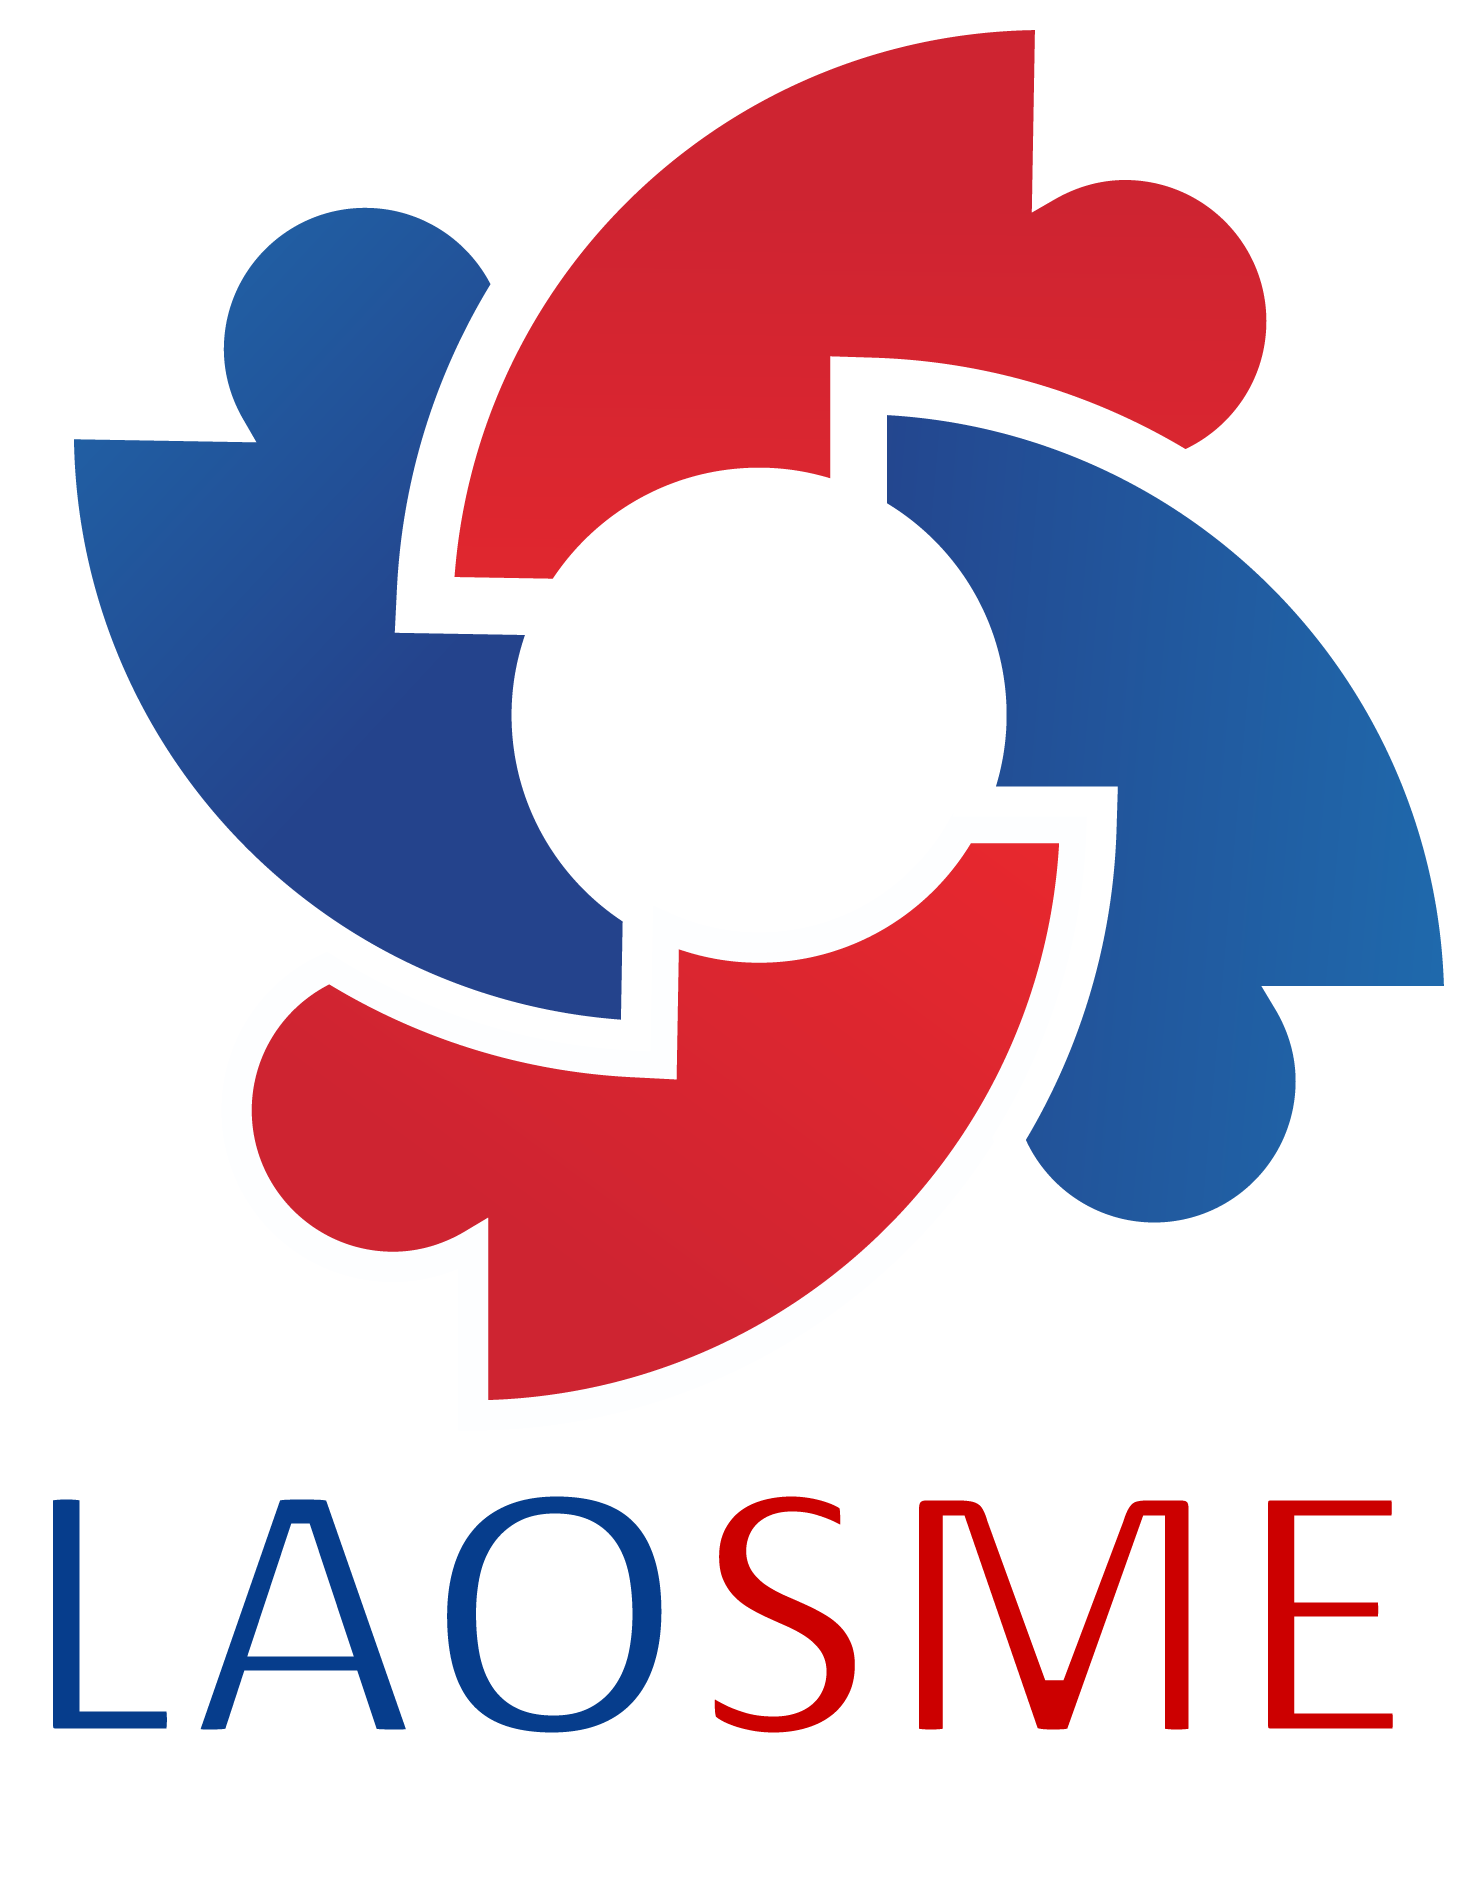 SME Promotion Association of Laos